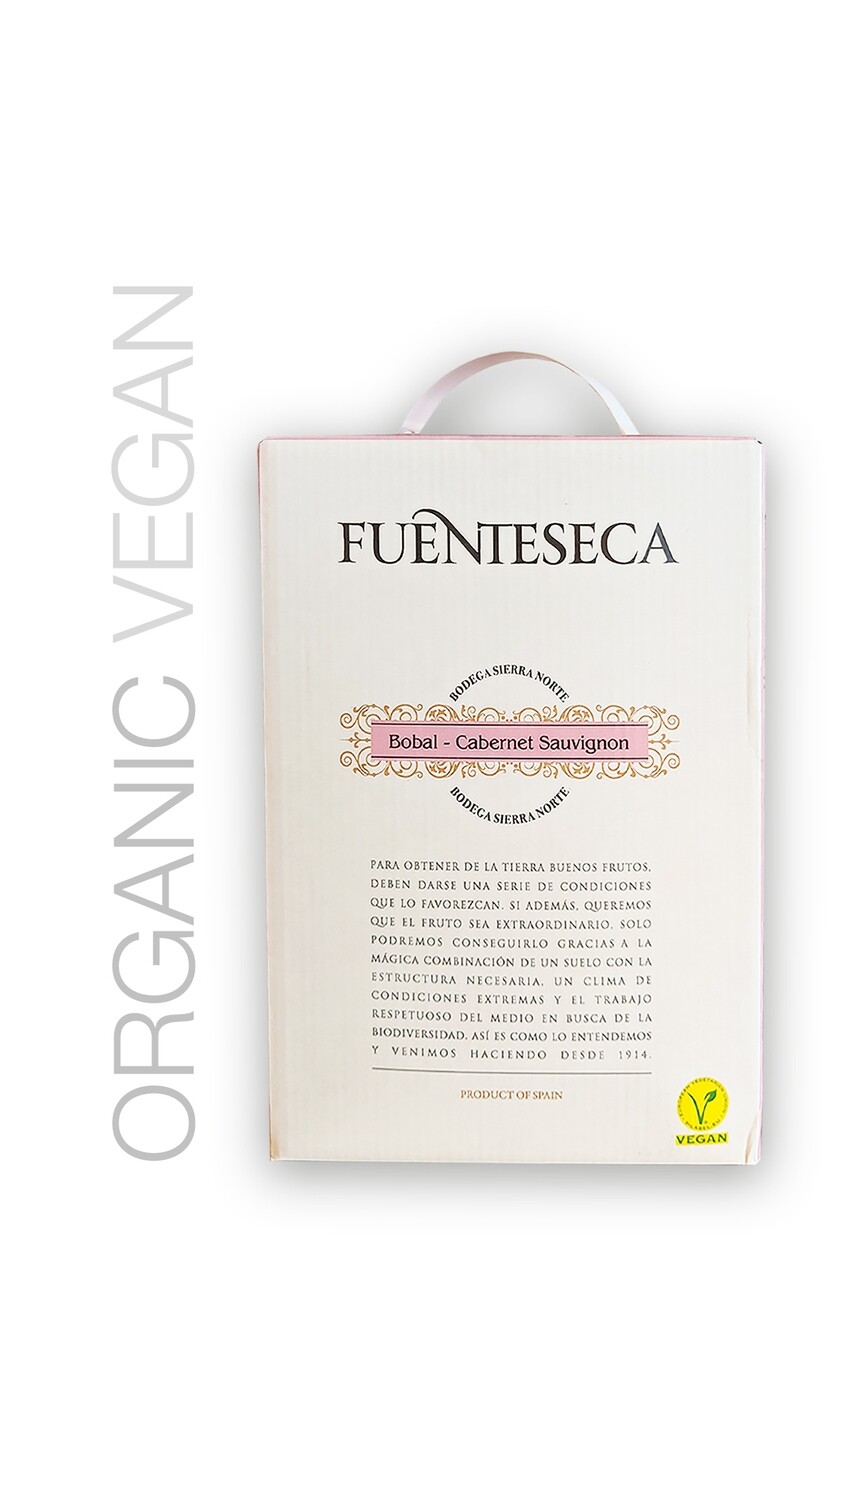 Fuenteseca - Rosado Blend 2019 3 L Box